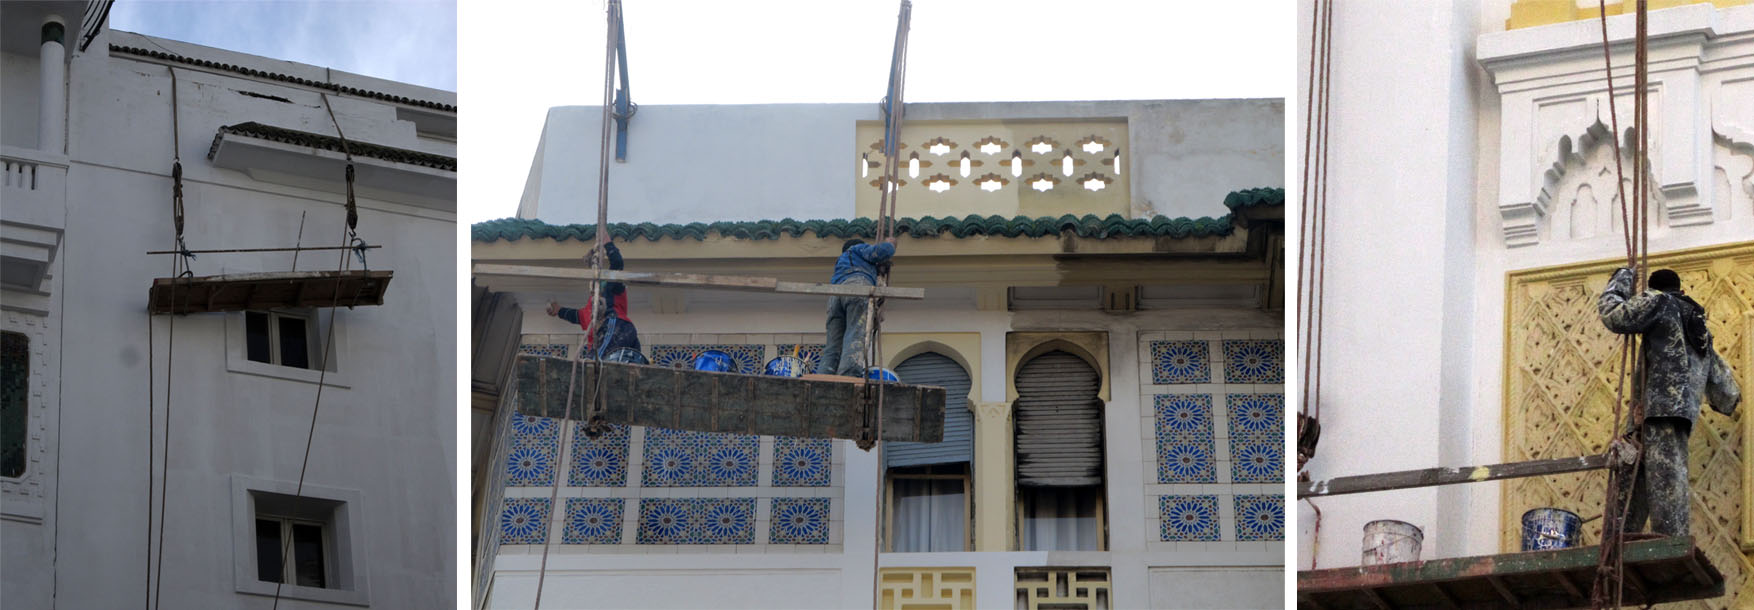 07 maroko kazablanka skele po gradu